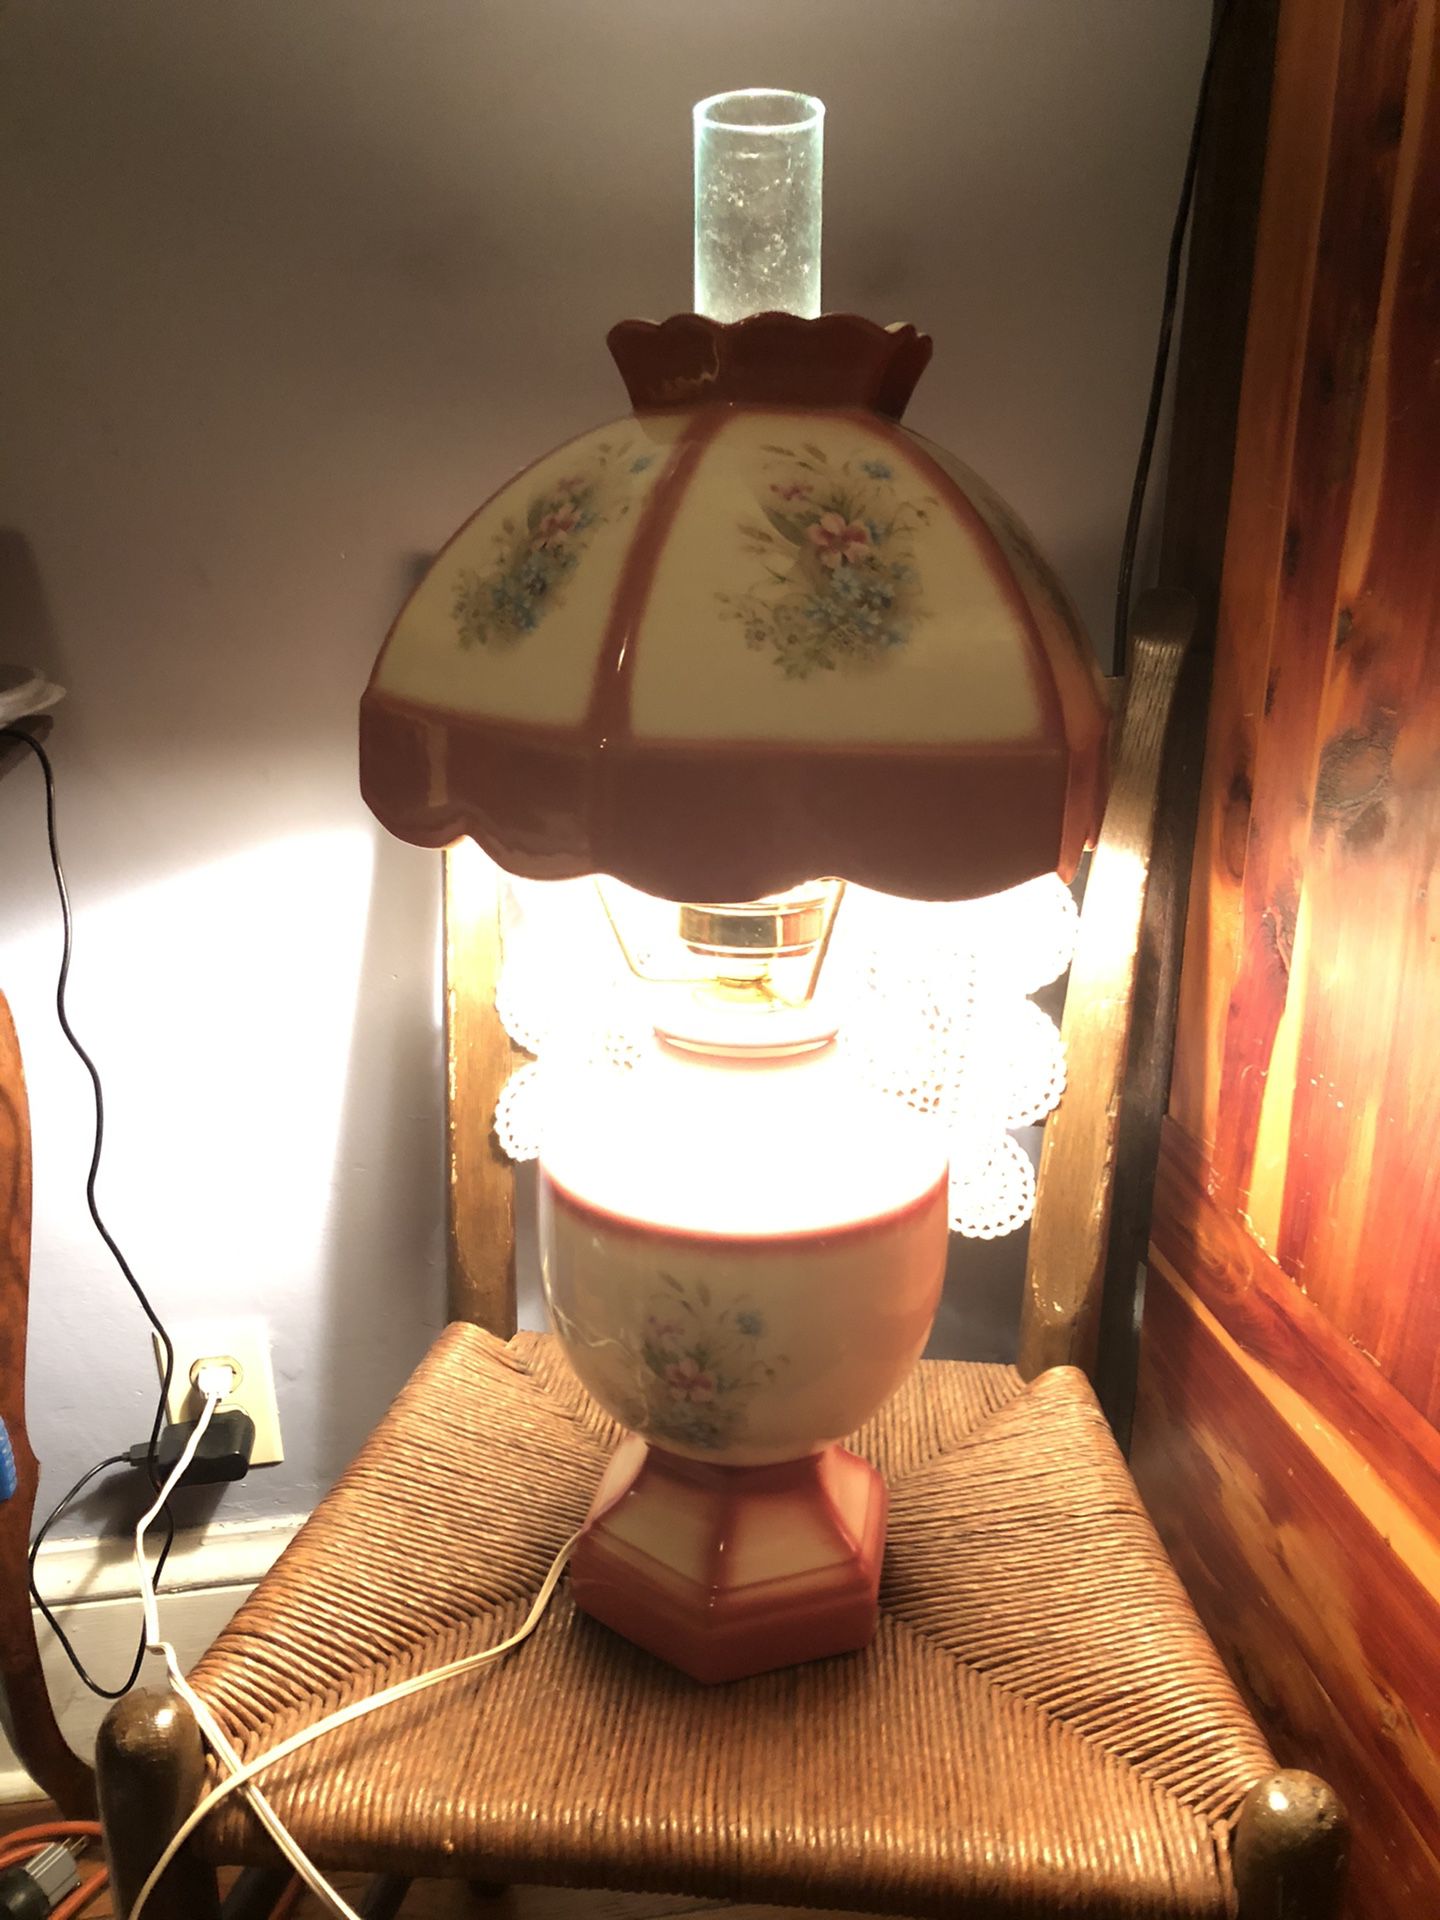 Hurricane lamp